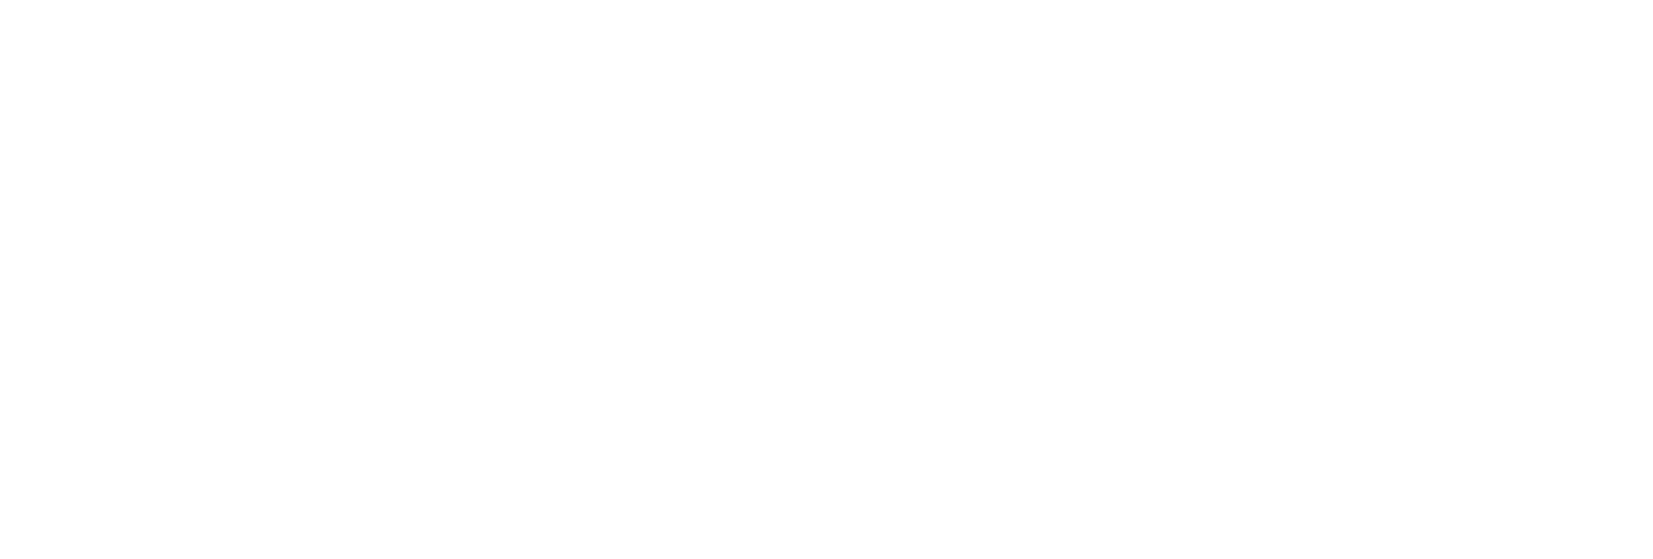 Cato Fashion logo pour fonds sombres (PNG transparent)